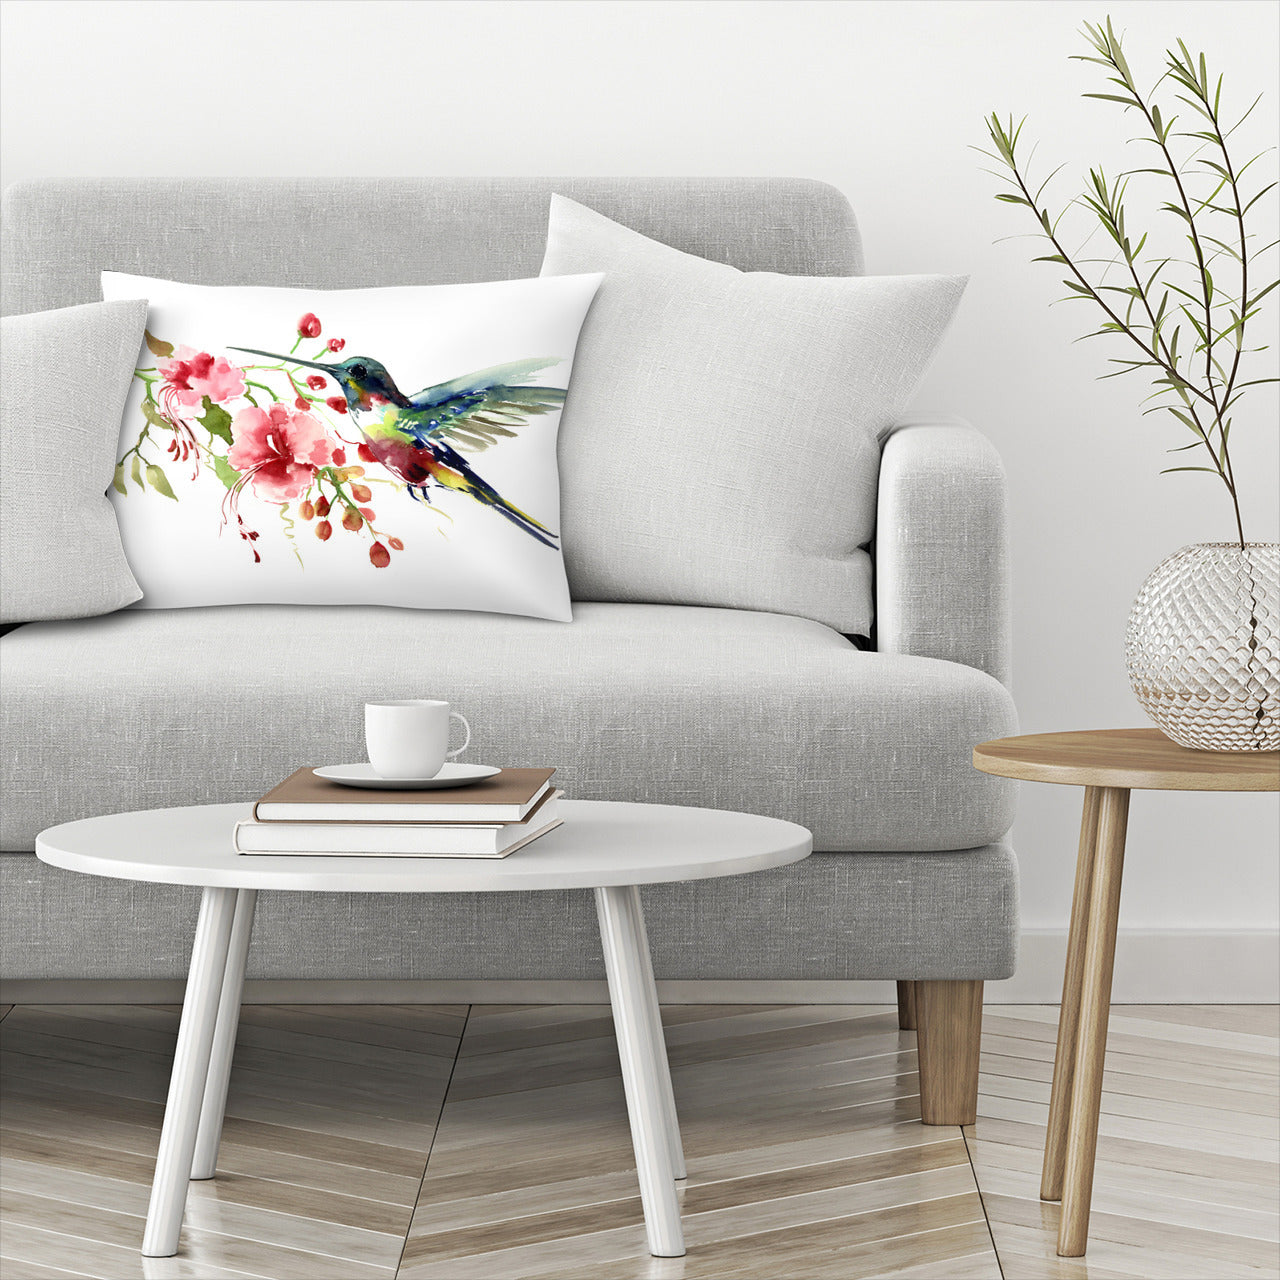 Hummingbird and Flowers Rectangular Pillow Cover & Insert